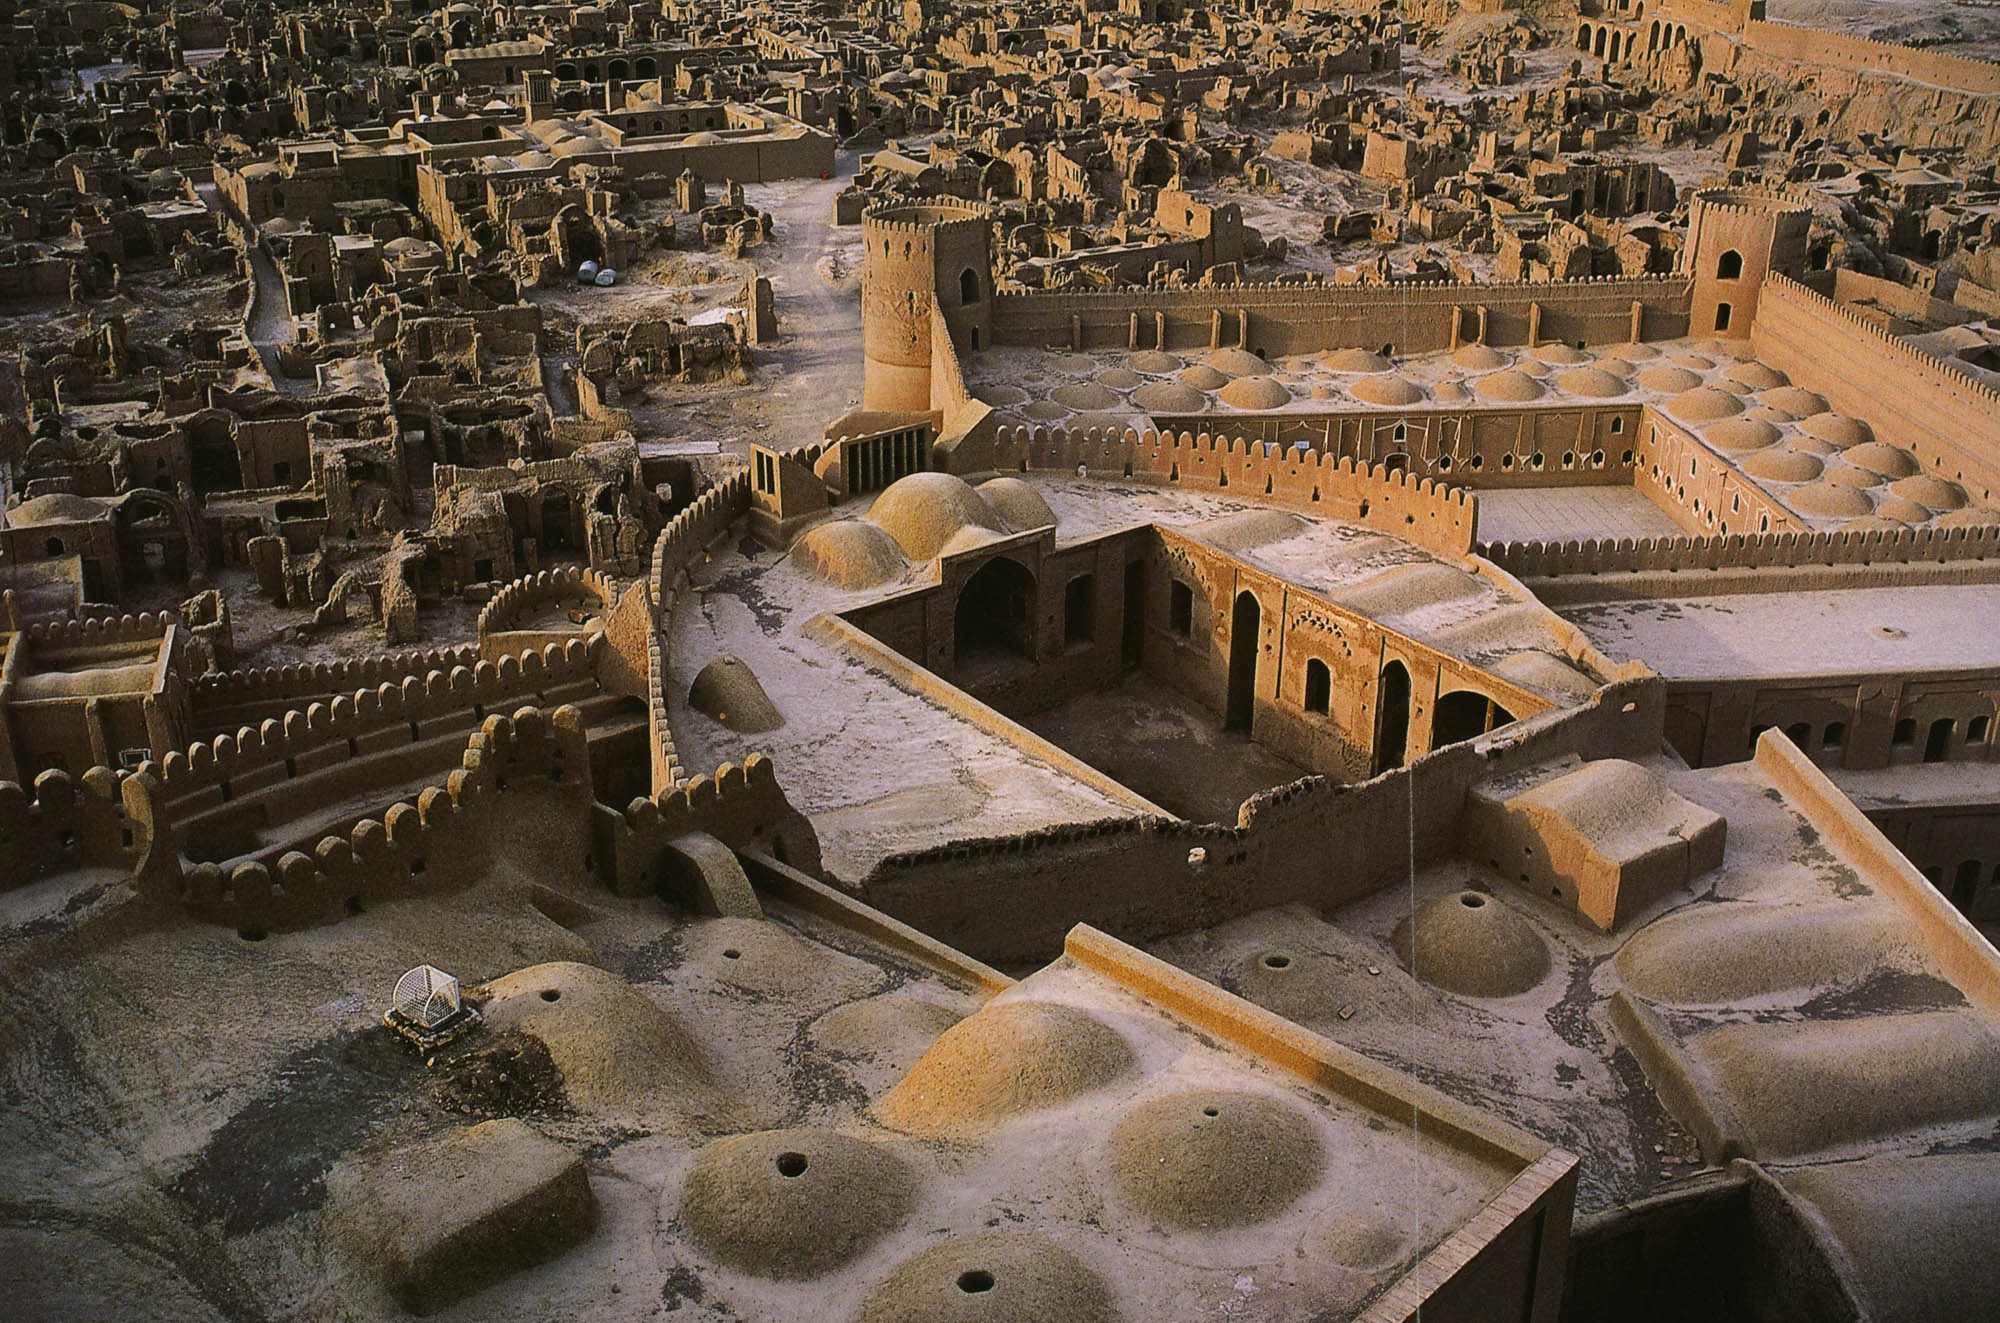 Arg-e Bam: The Magnificent Ancient Citadel of Kerman